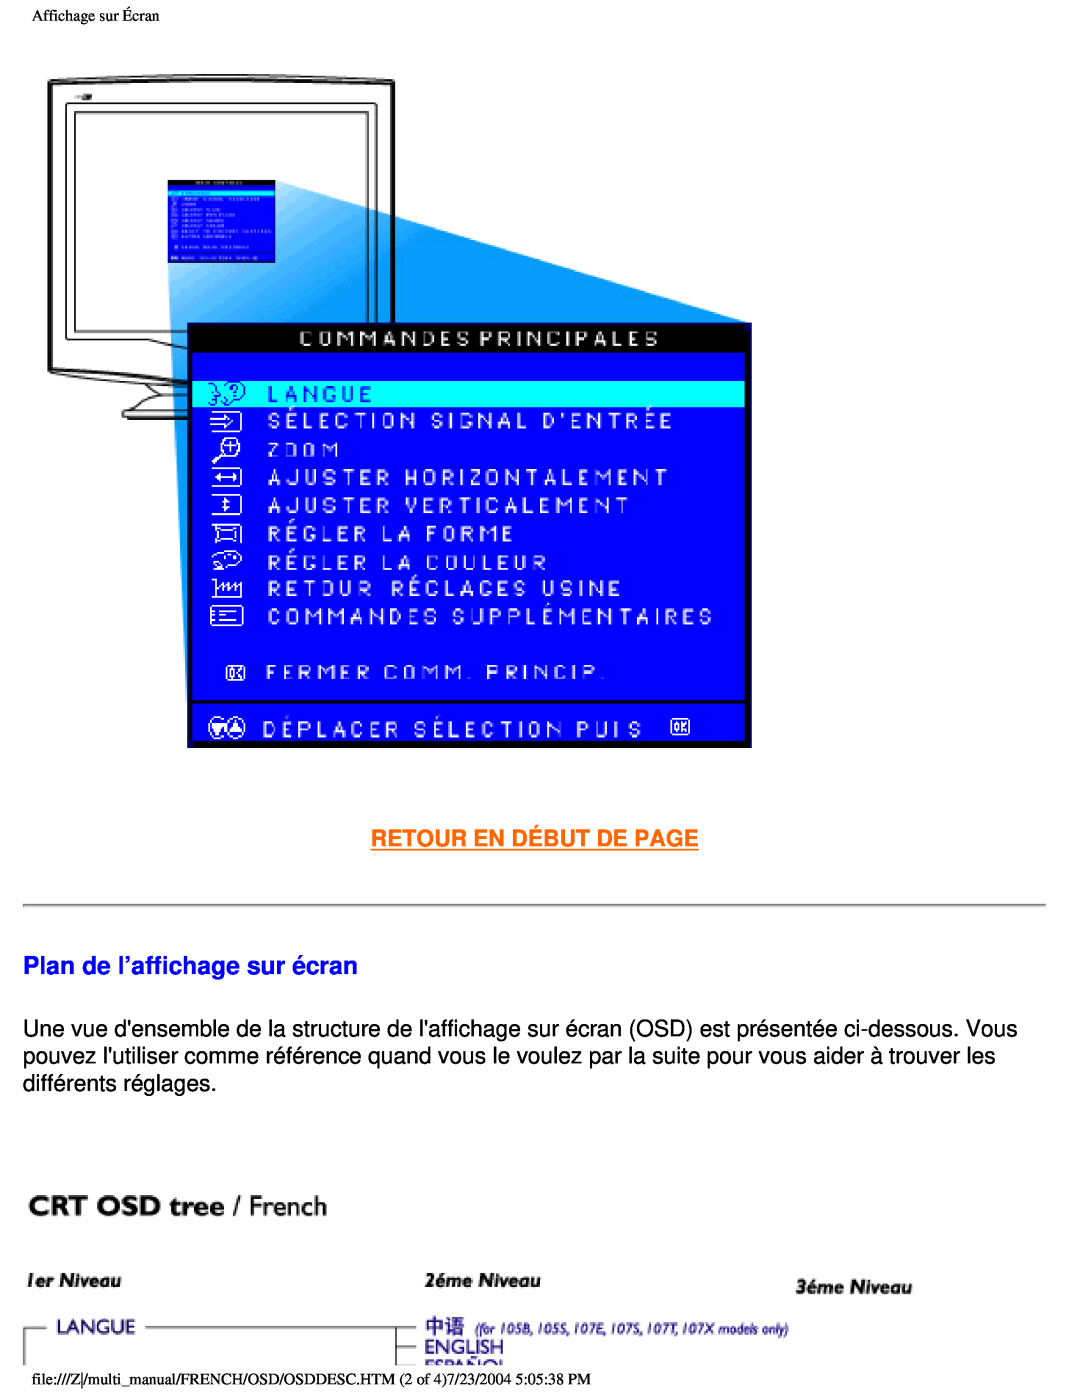 Philips 107B3 user manual Plan de l’affichage sur écran, Retour En Début De Page, Affichage sur Écran 